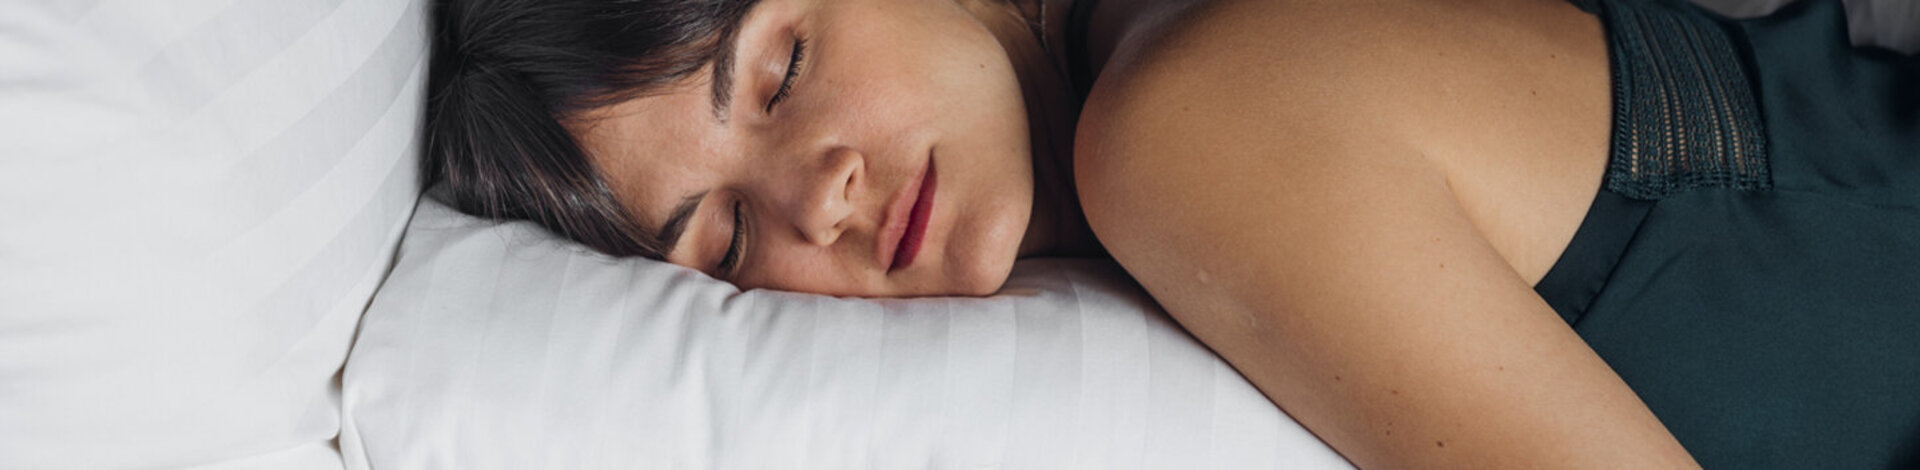 Eine junge Frau liegt in einem Bett auf einem Kopfkissen und schläft.